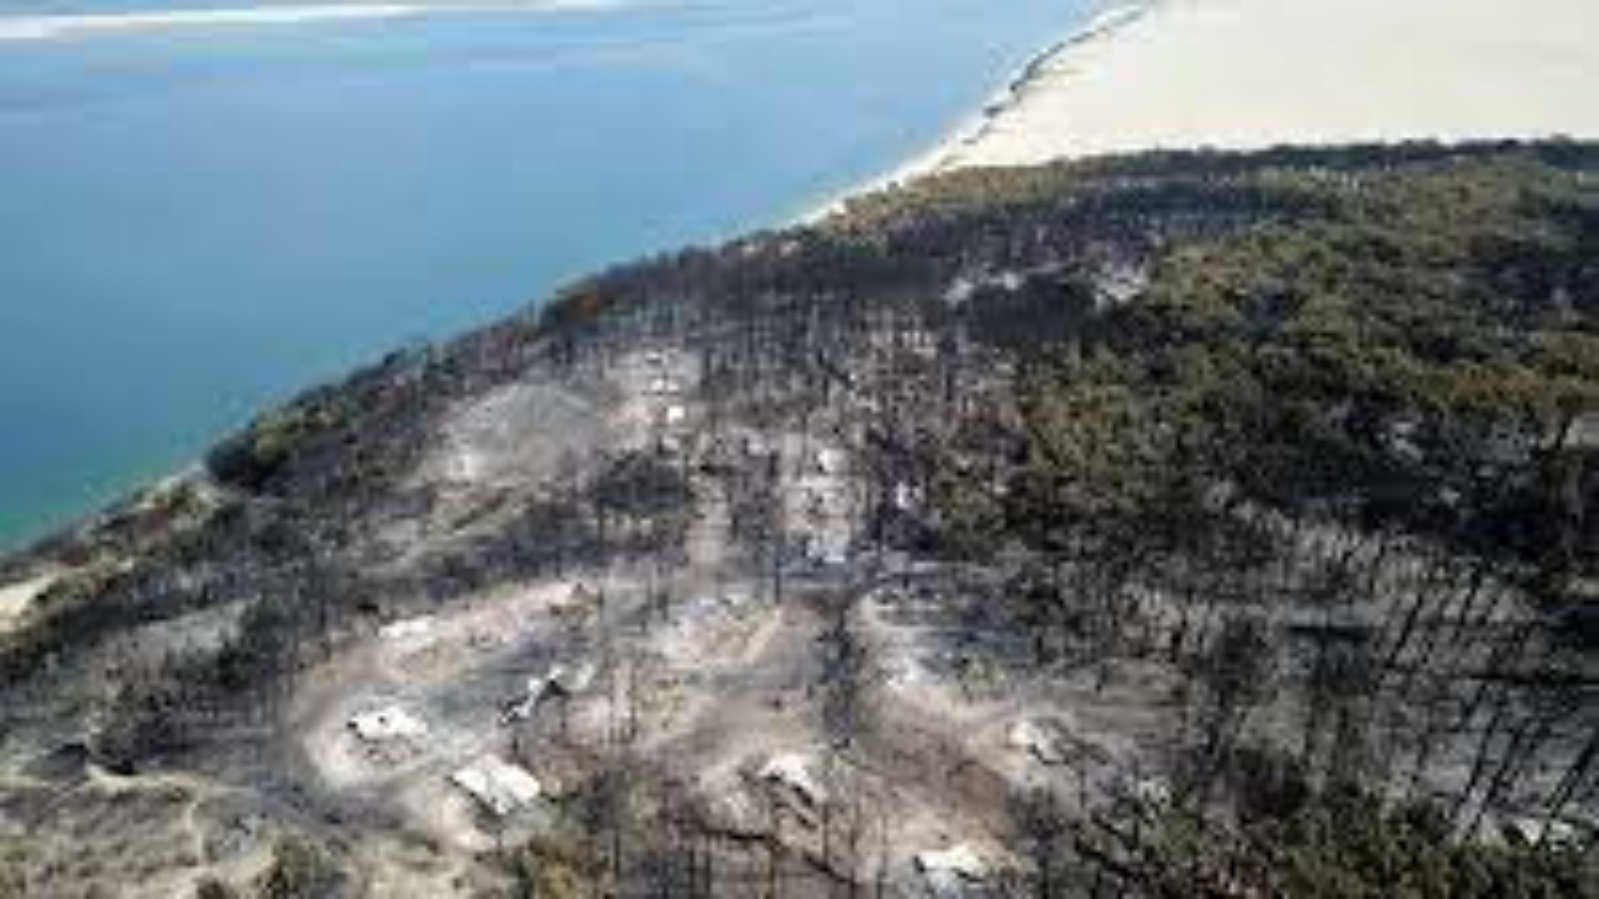 احتواء حريق دمر سبعة آلاف هكتار من الغابات في جنوب غرب فرنسا